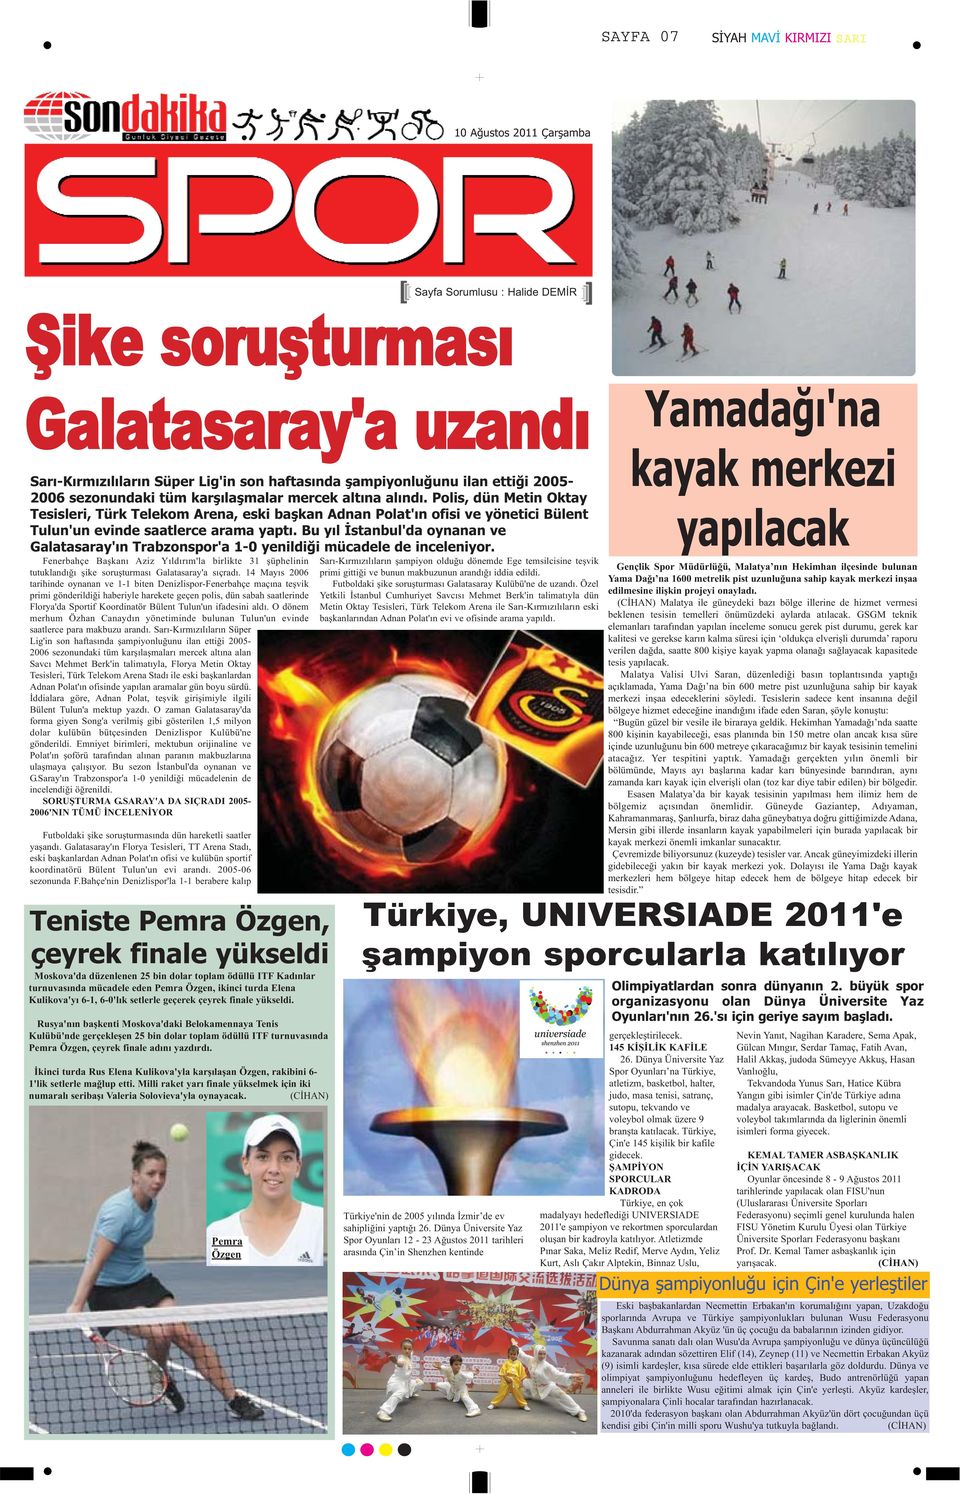 Bu yıl İstanbul'da oynanan ve Galatasaray'ın Trabzonspor'a 1-0 yenildiği mücadele de inceleniyor.